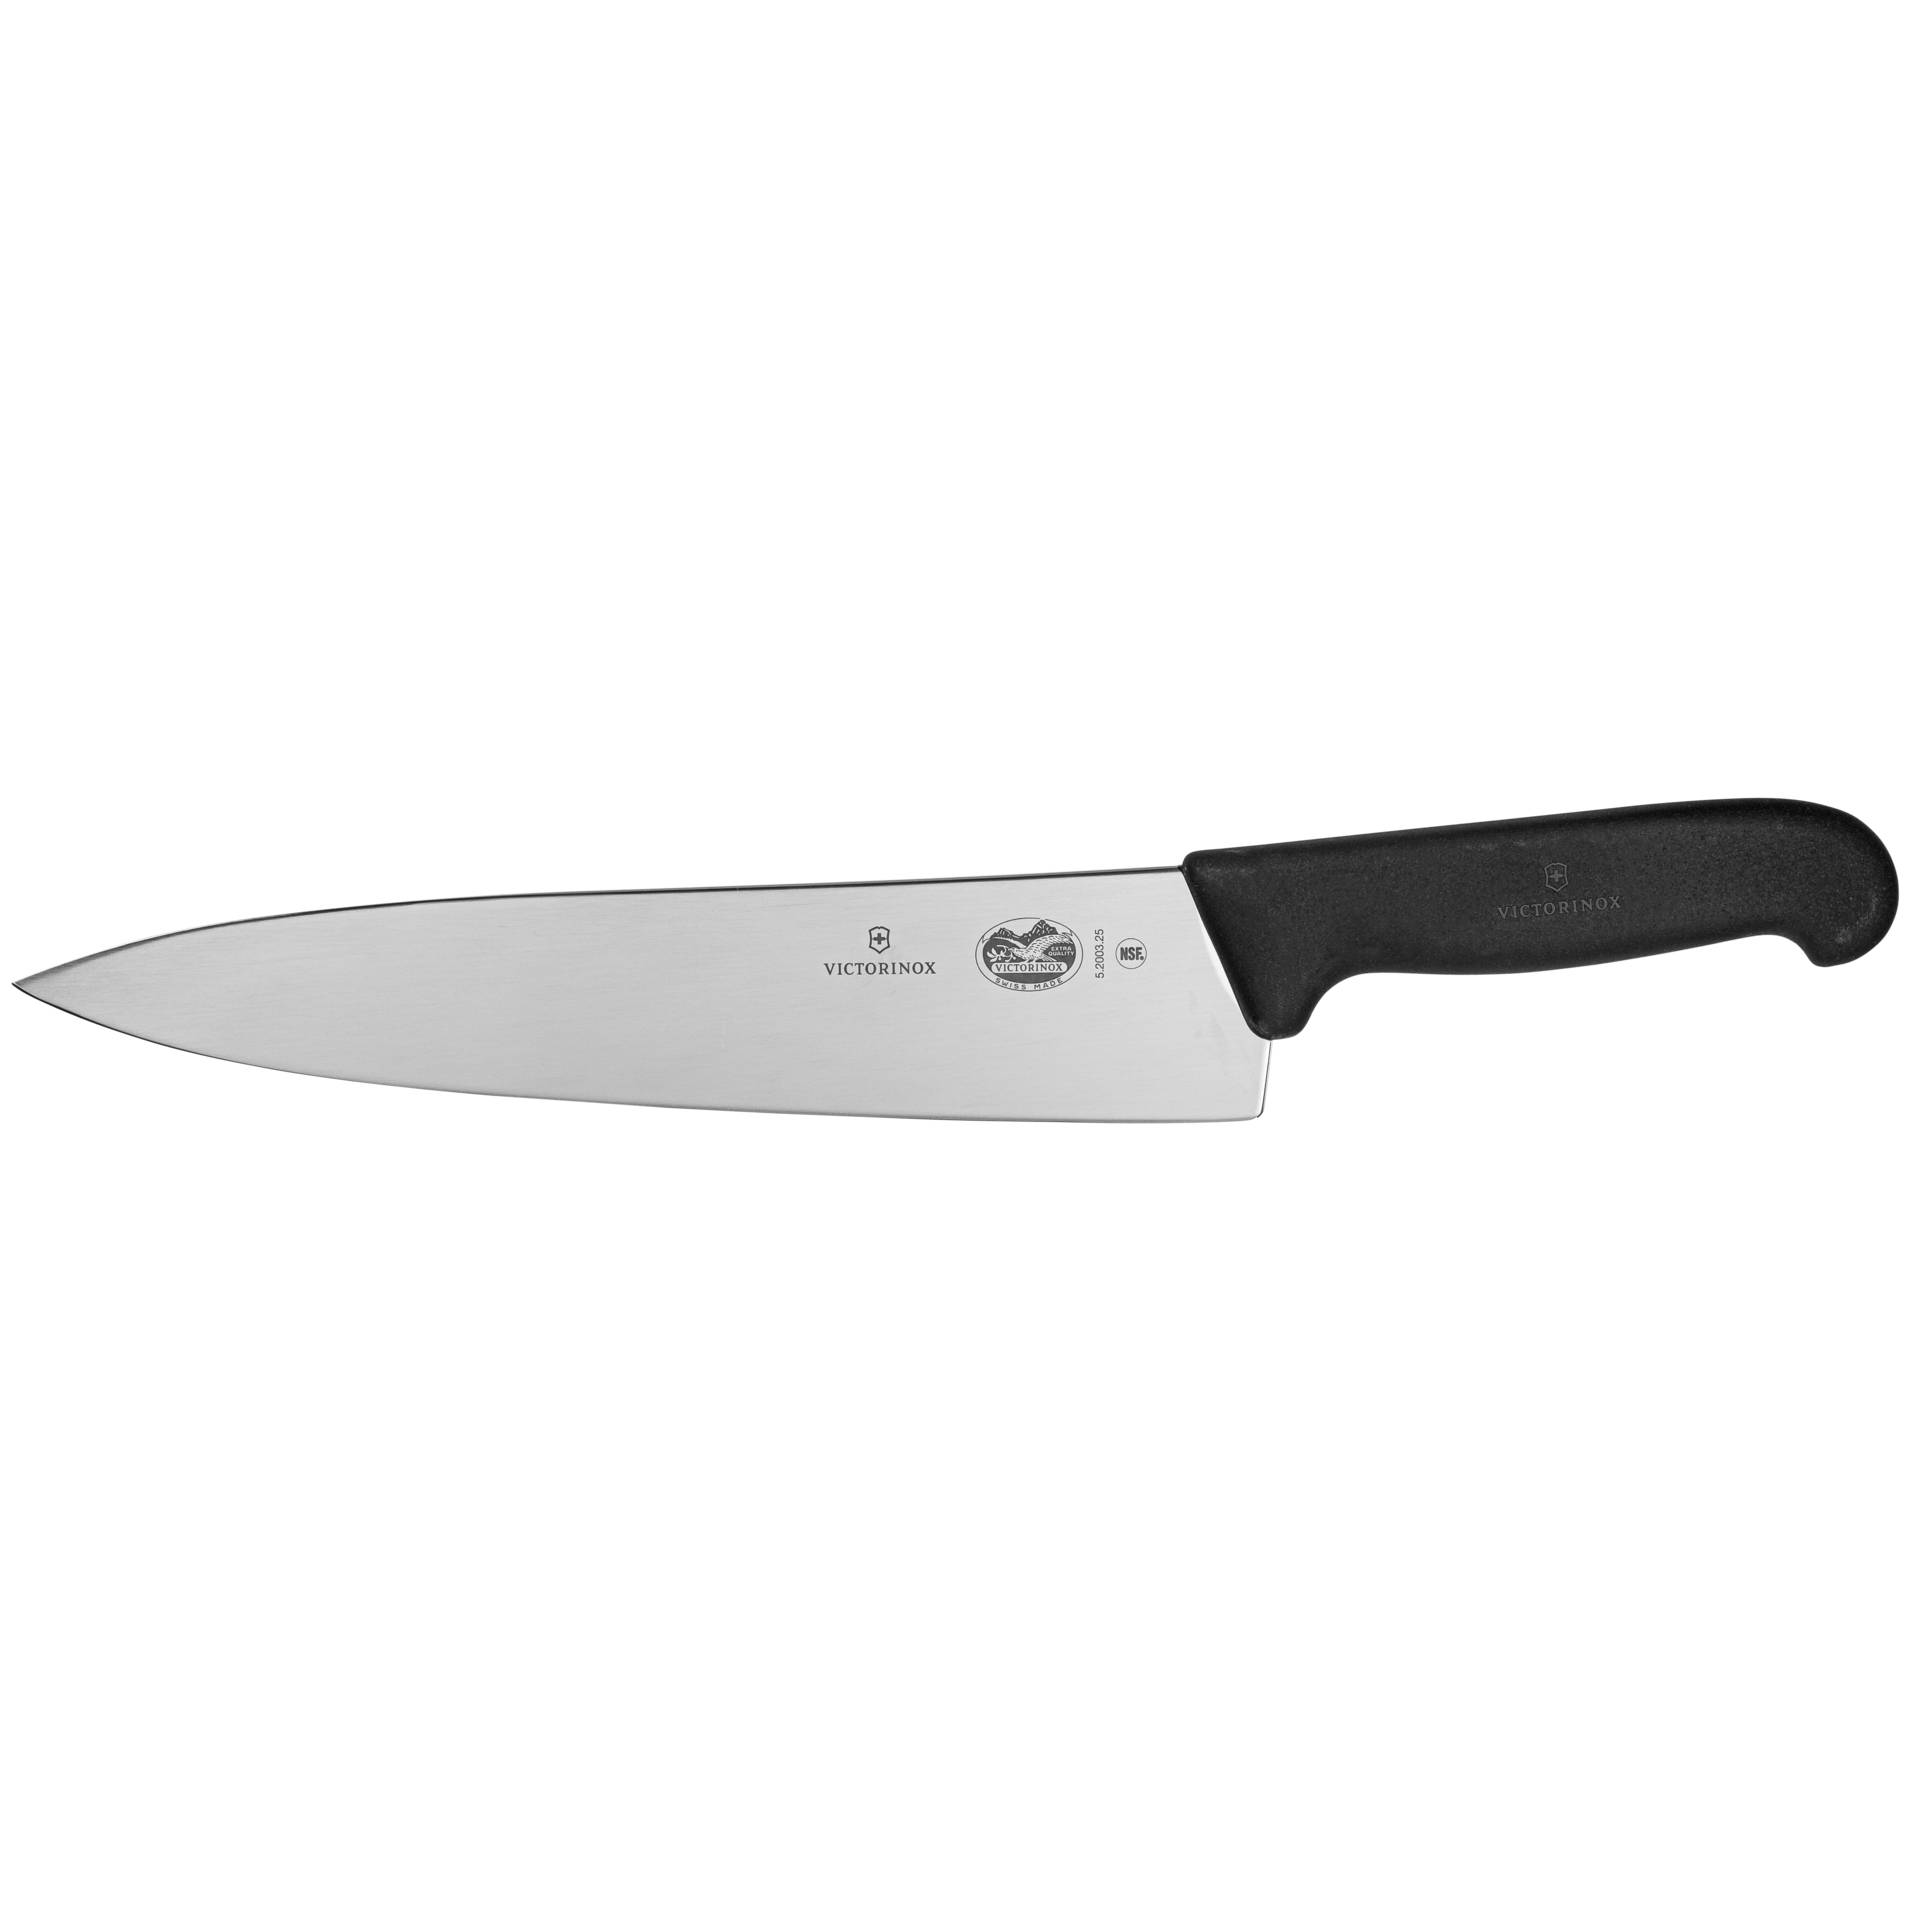 Victorinox Fibrox coltello da cucina 25 cm